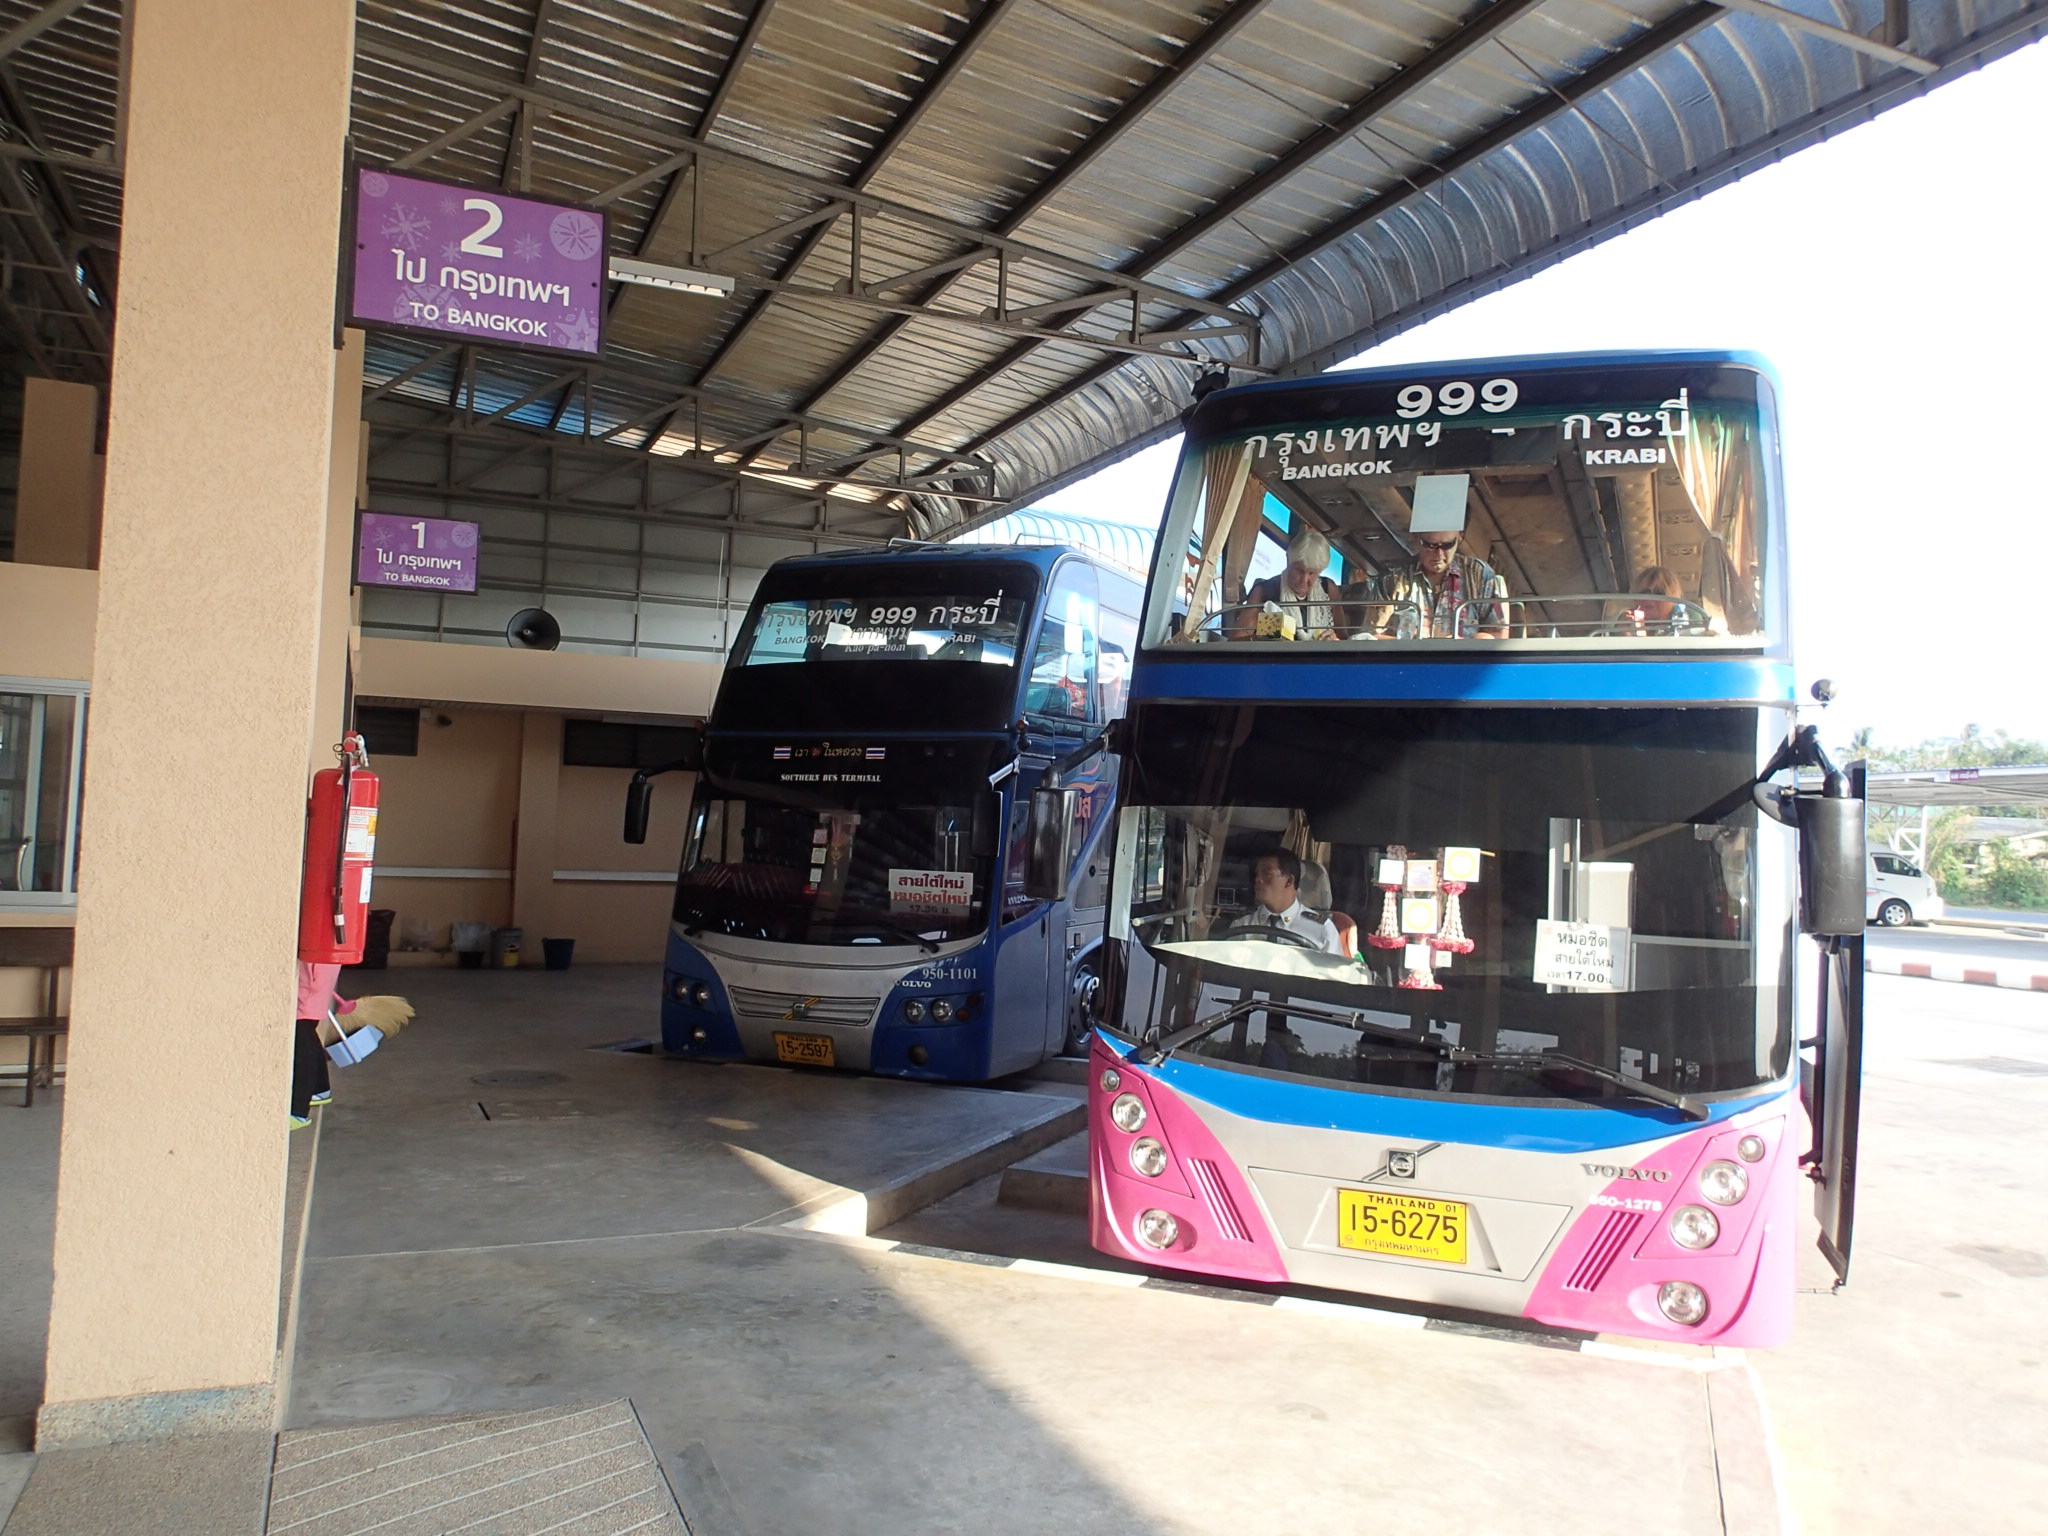 Krabi to Bangkok bus